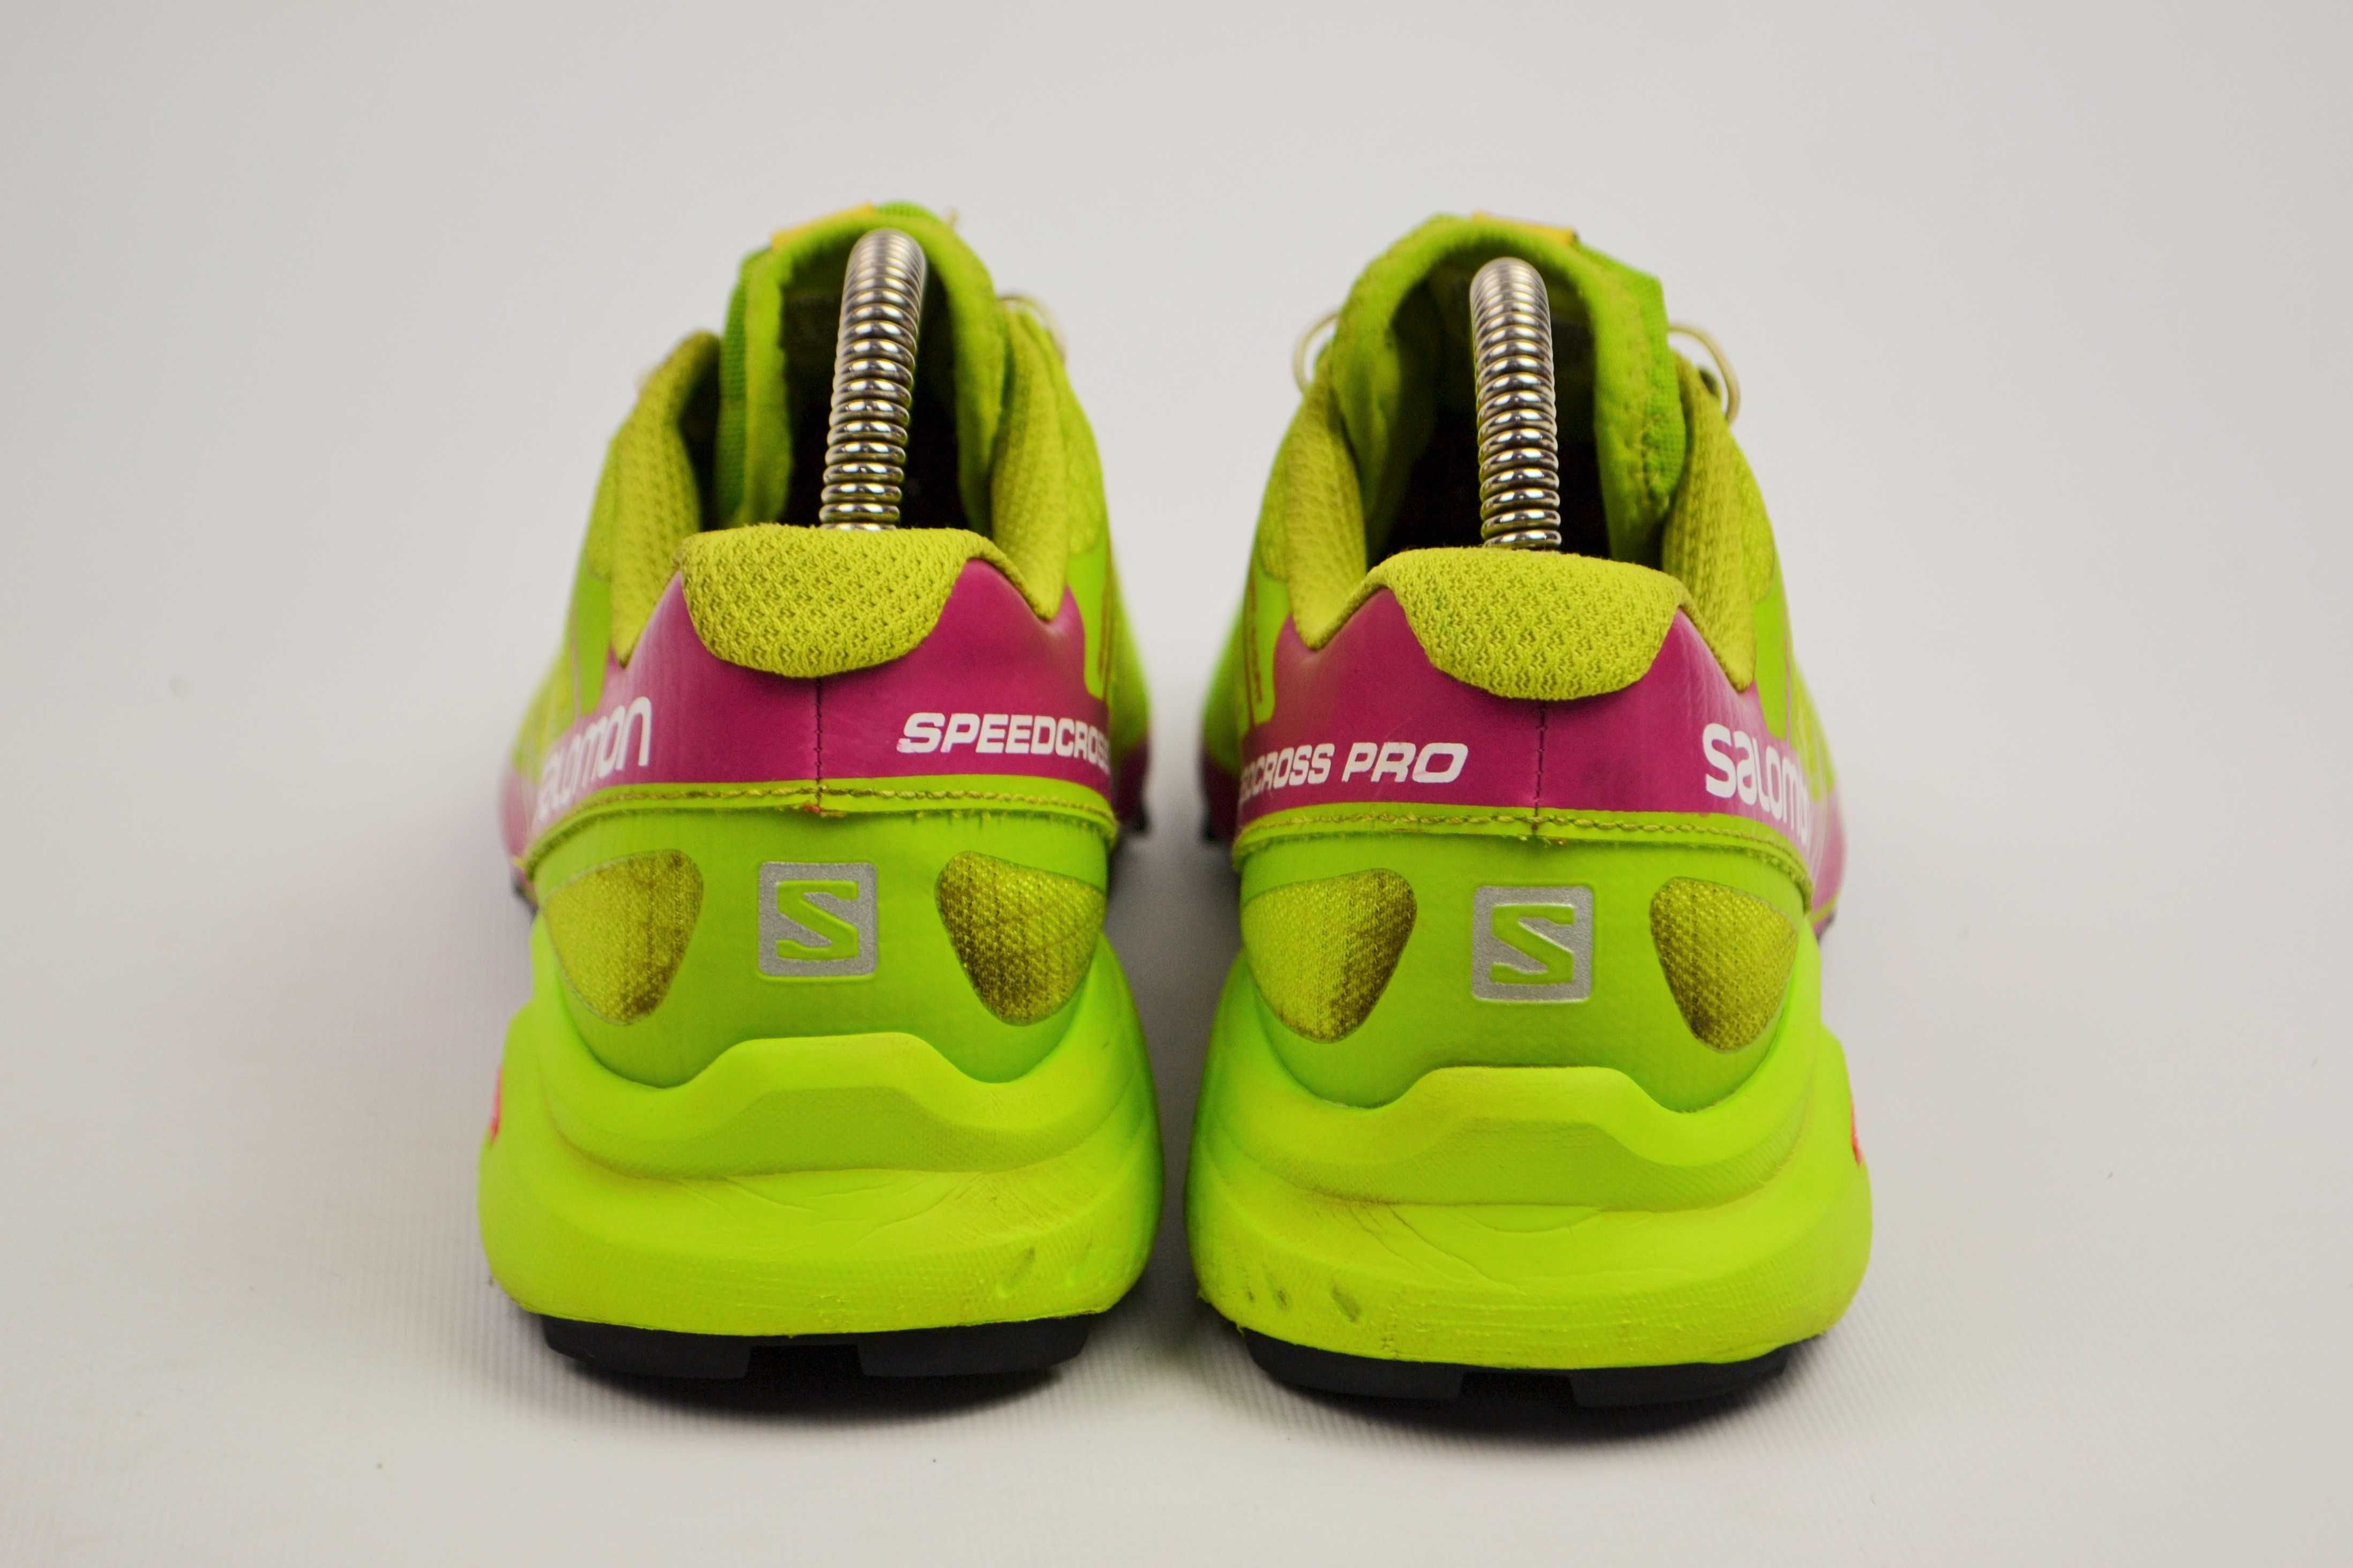 Оригінал Salomon Speedcross Pro жіночі кроссівки 37рр